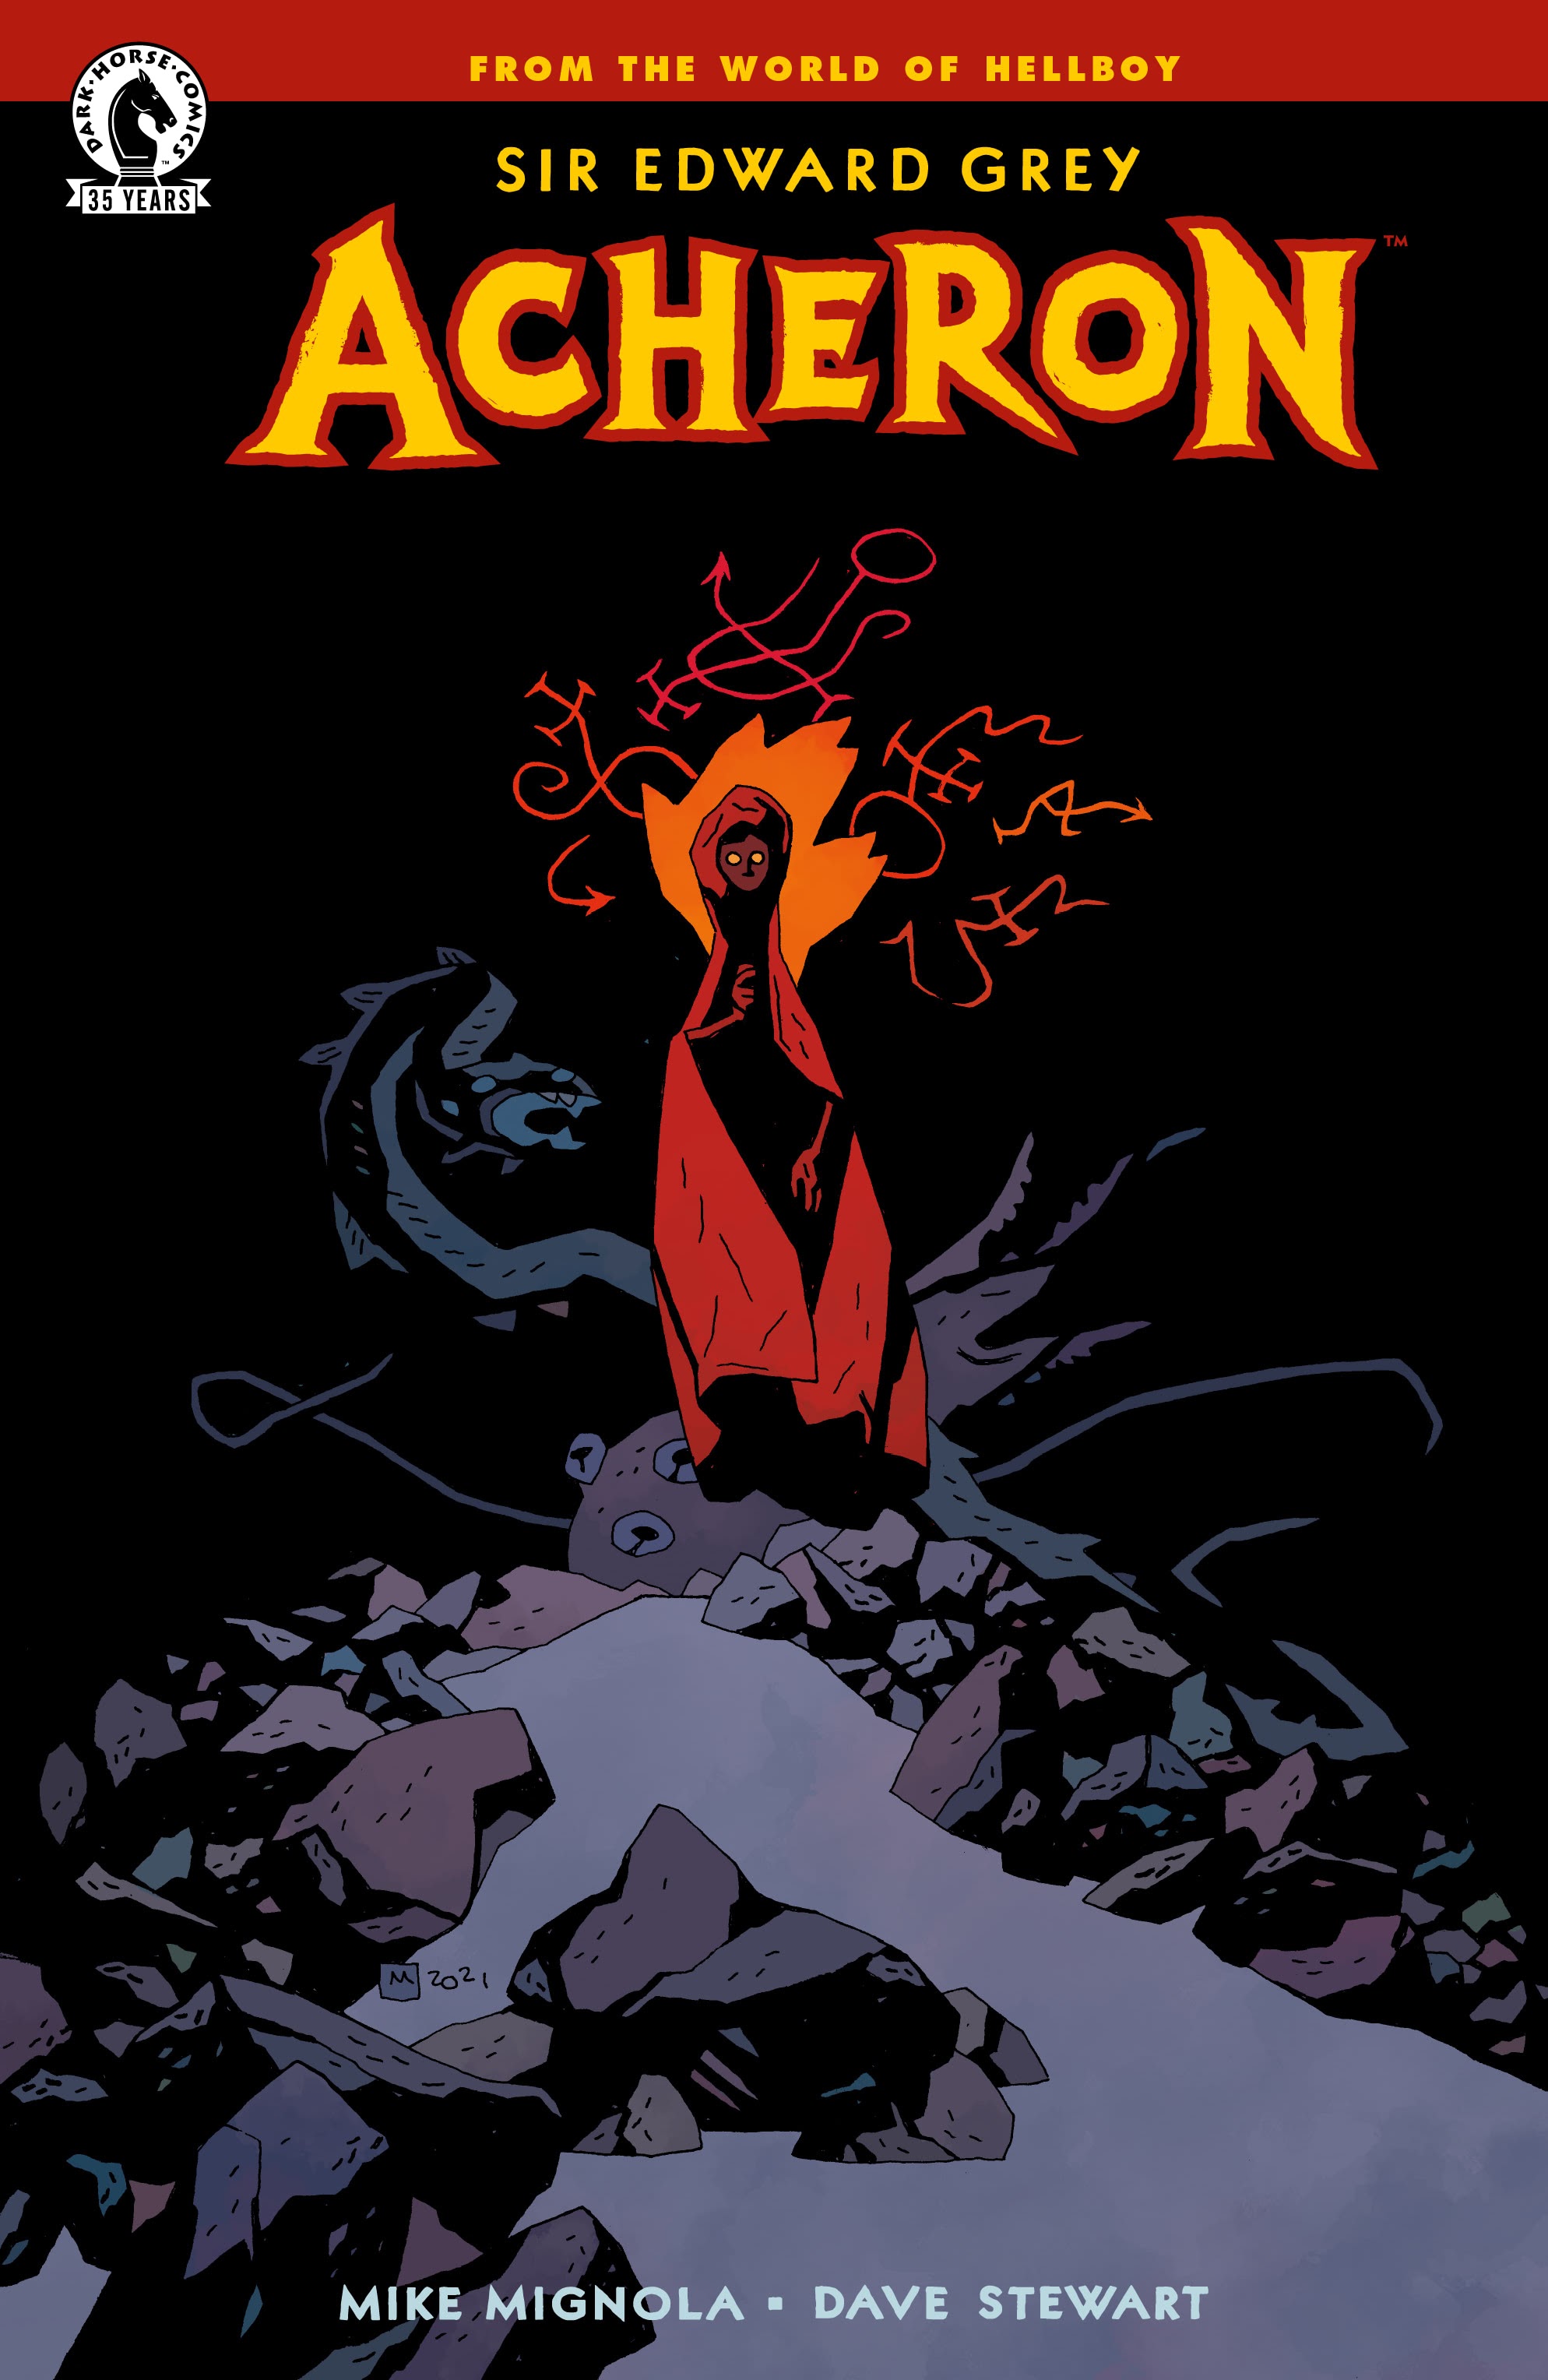 Read online Sir Edward Grey: Acheron comic -  Issue # Full - 1